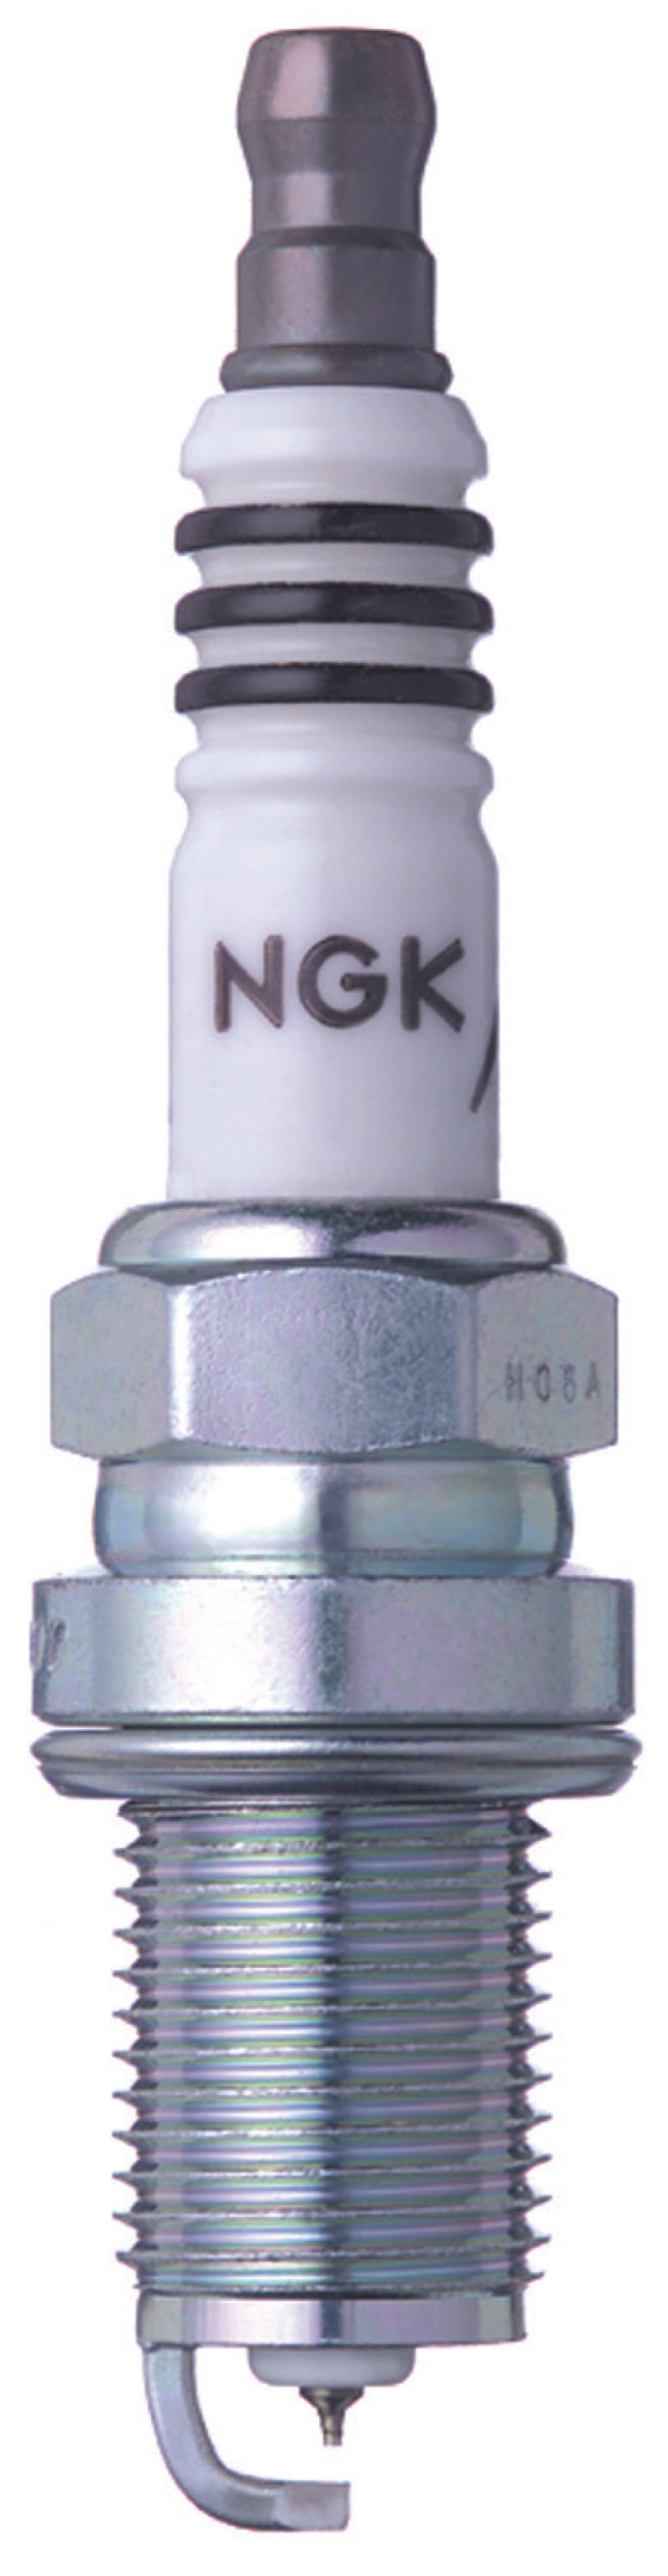 NGK Iridium Spark Plugs Box of 4 (BKR7EIX-11).